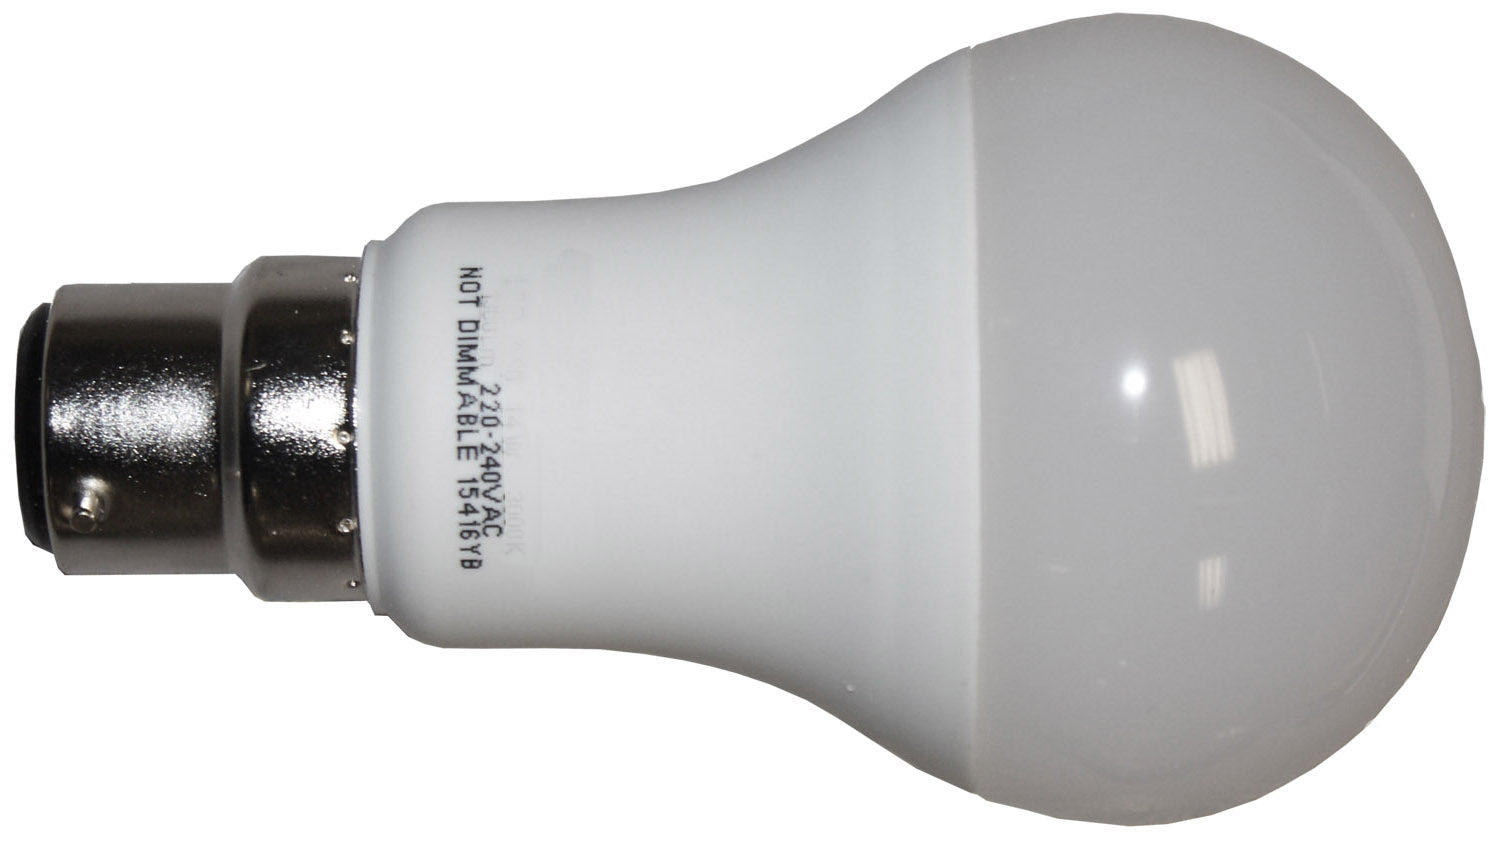 Capuchon à baïonnette standard B22 - Ampoules de service LED 240v-13w - spo-cs-disabled - spo-default - spo-disabled - spo-notify-me-di